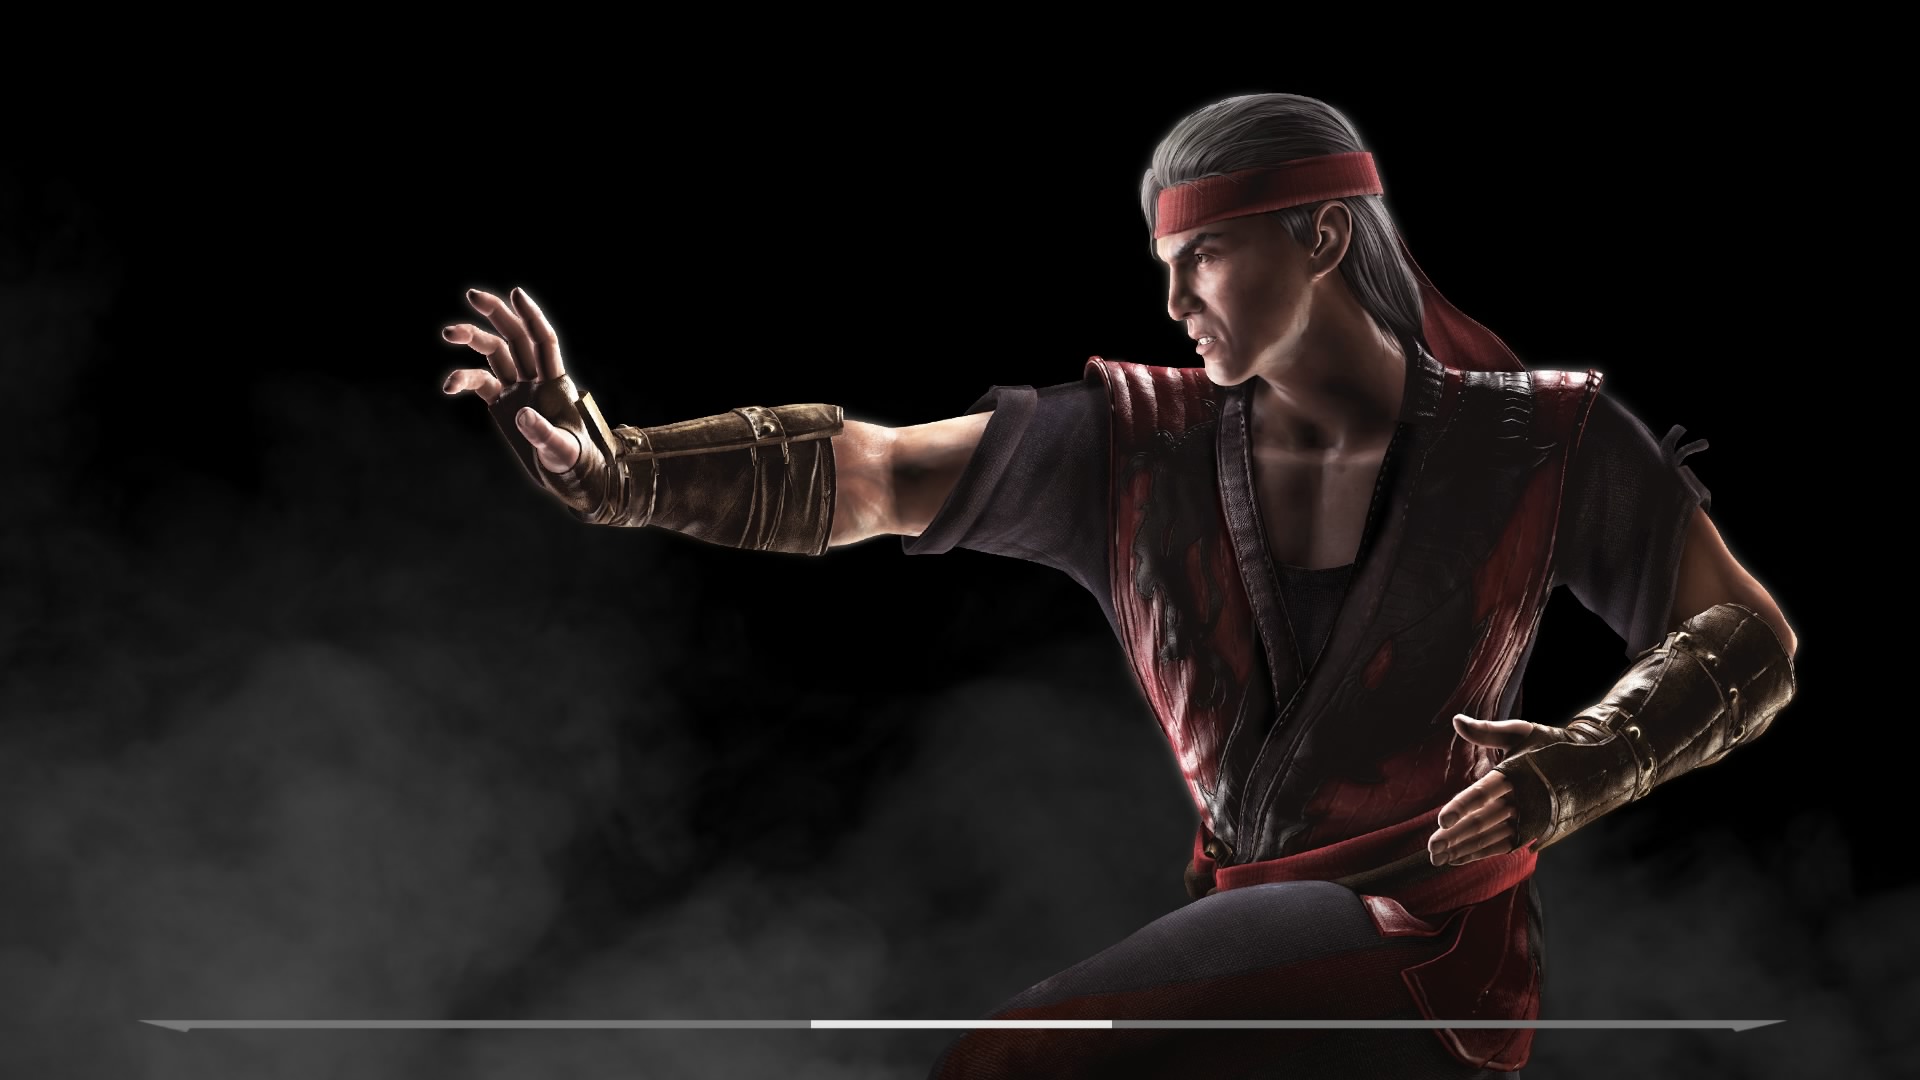 Liu Kang Inside Mortal Kombat